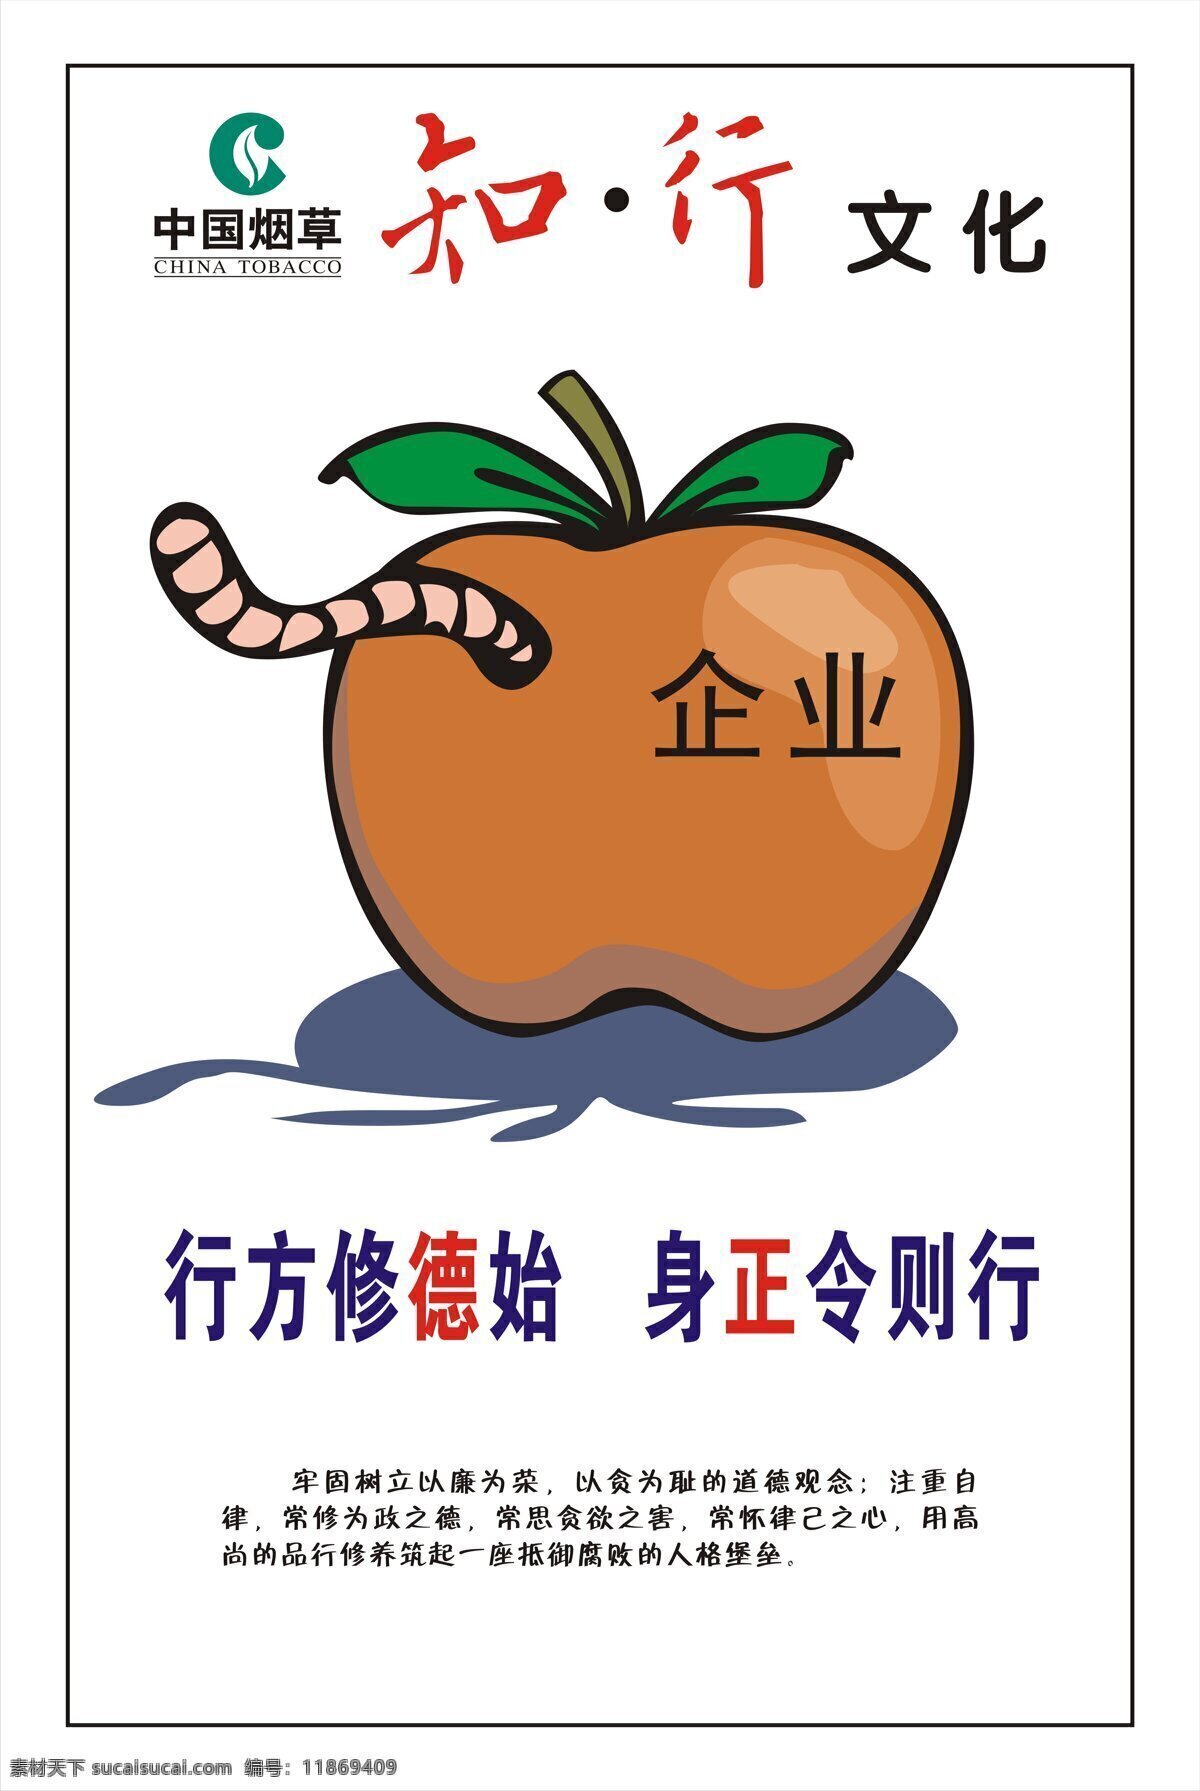 知行 文化 标志 虫子 苹果 企业 中国烟草 行方修德始 身正令则行